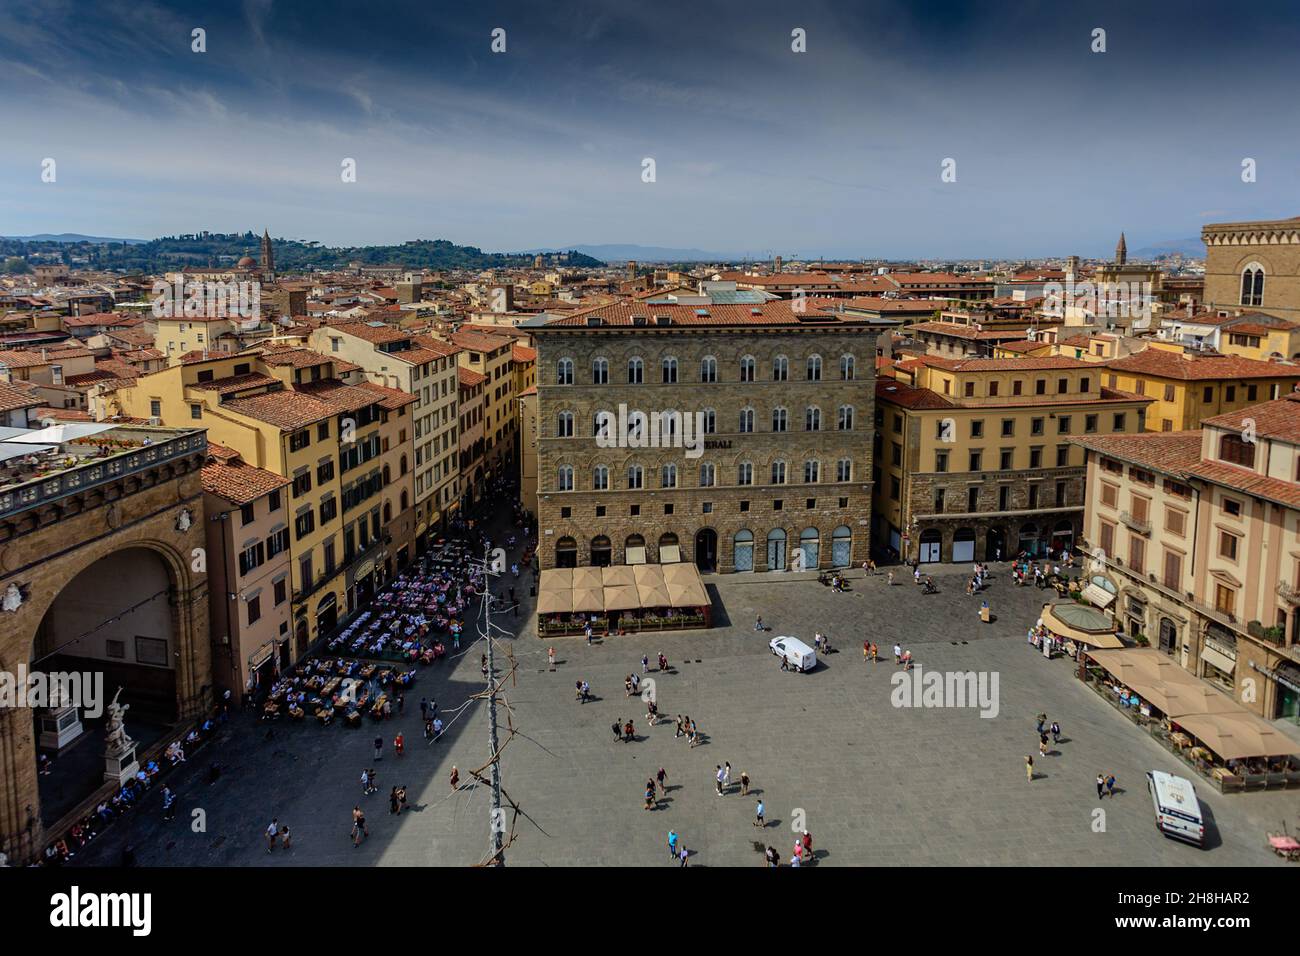 Piazza della Signoria panoramic. Florence. Italy. Stock Photo